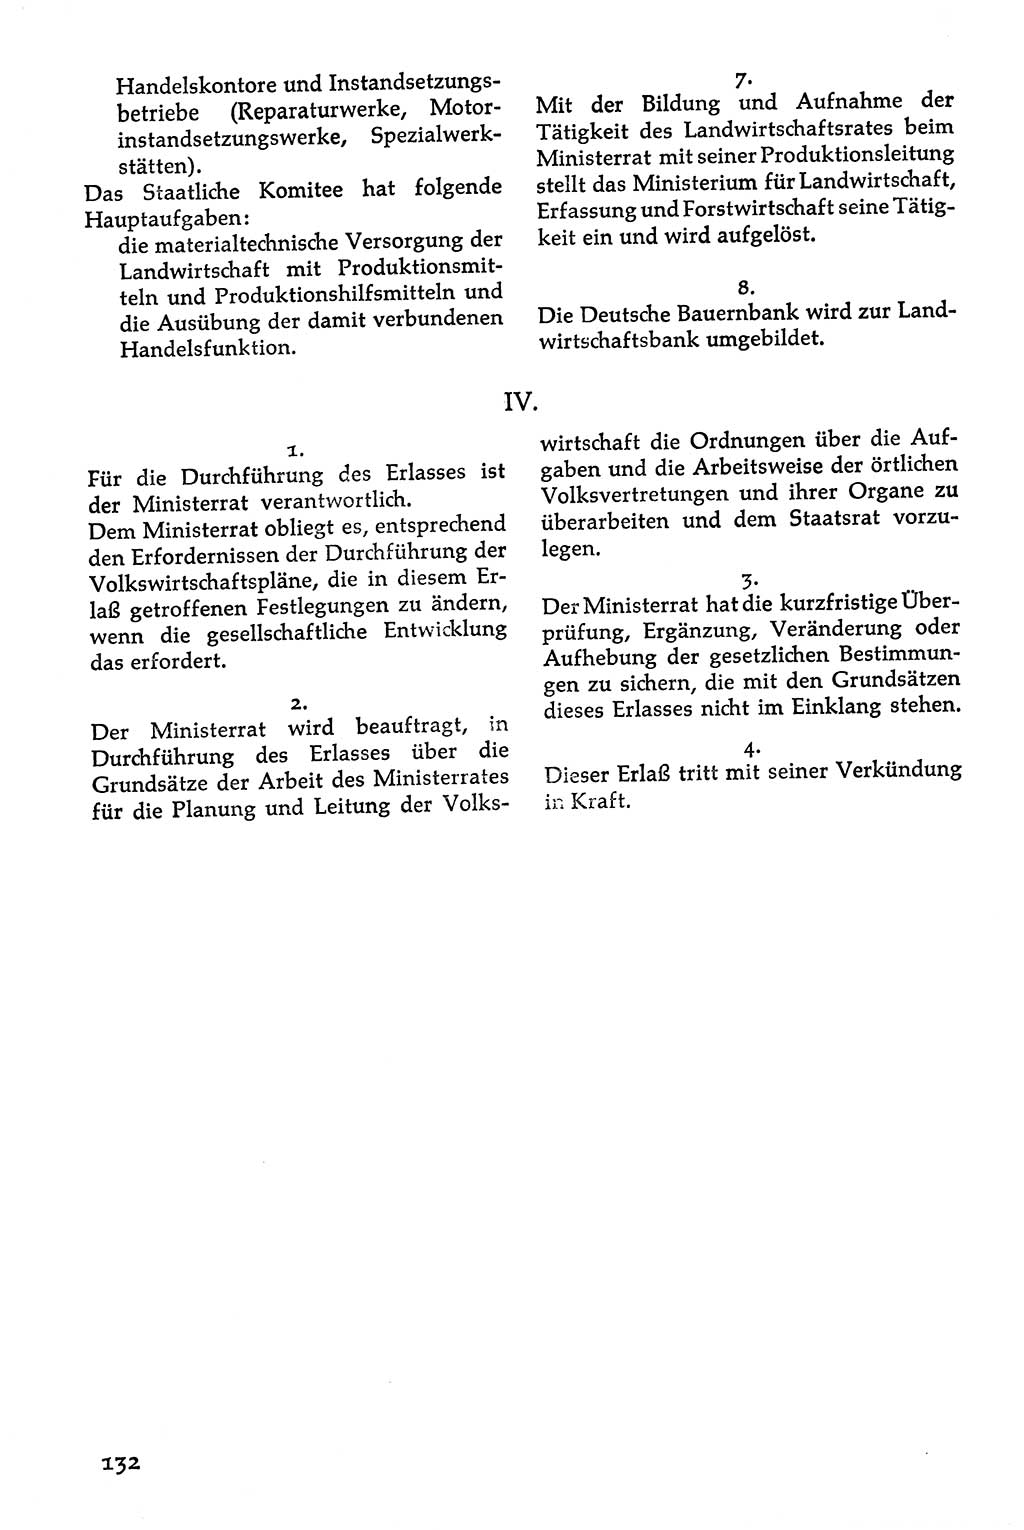 Volksdemokratische Ordnung in Mitteldeutschland [Deutsche Demokratische Republik (DDR)], Texte zur verfassungsrechtlichen Situation 1963, Seite 132 (Volksdem. Ordn. Md. DDR 1963, S. 132)